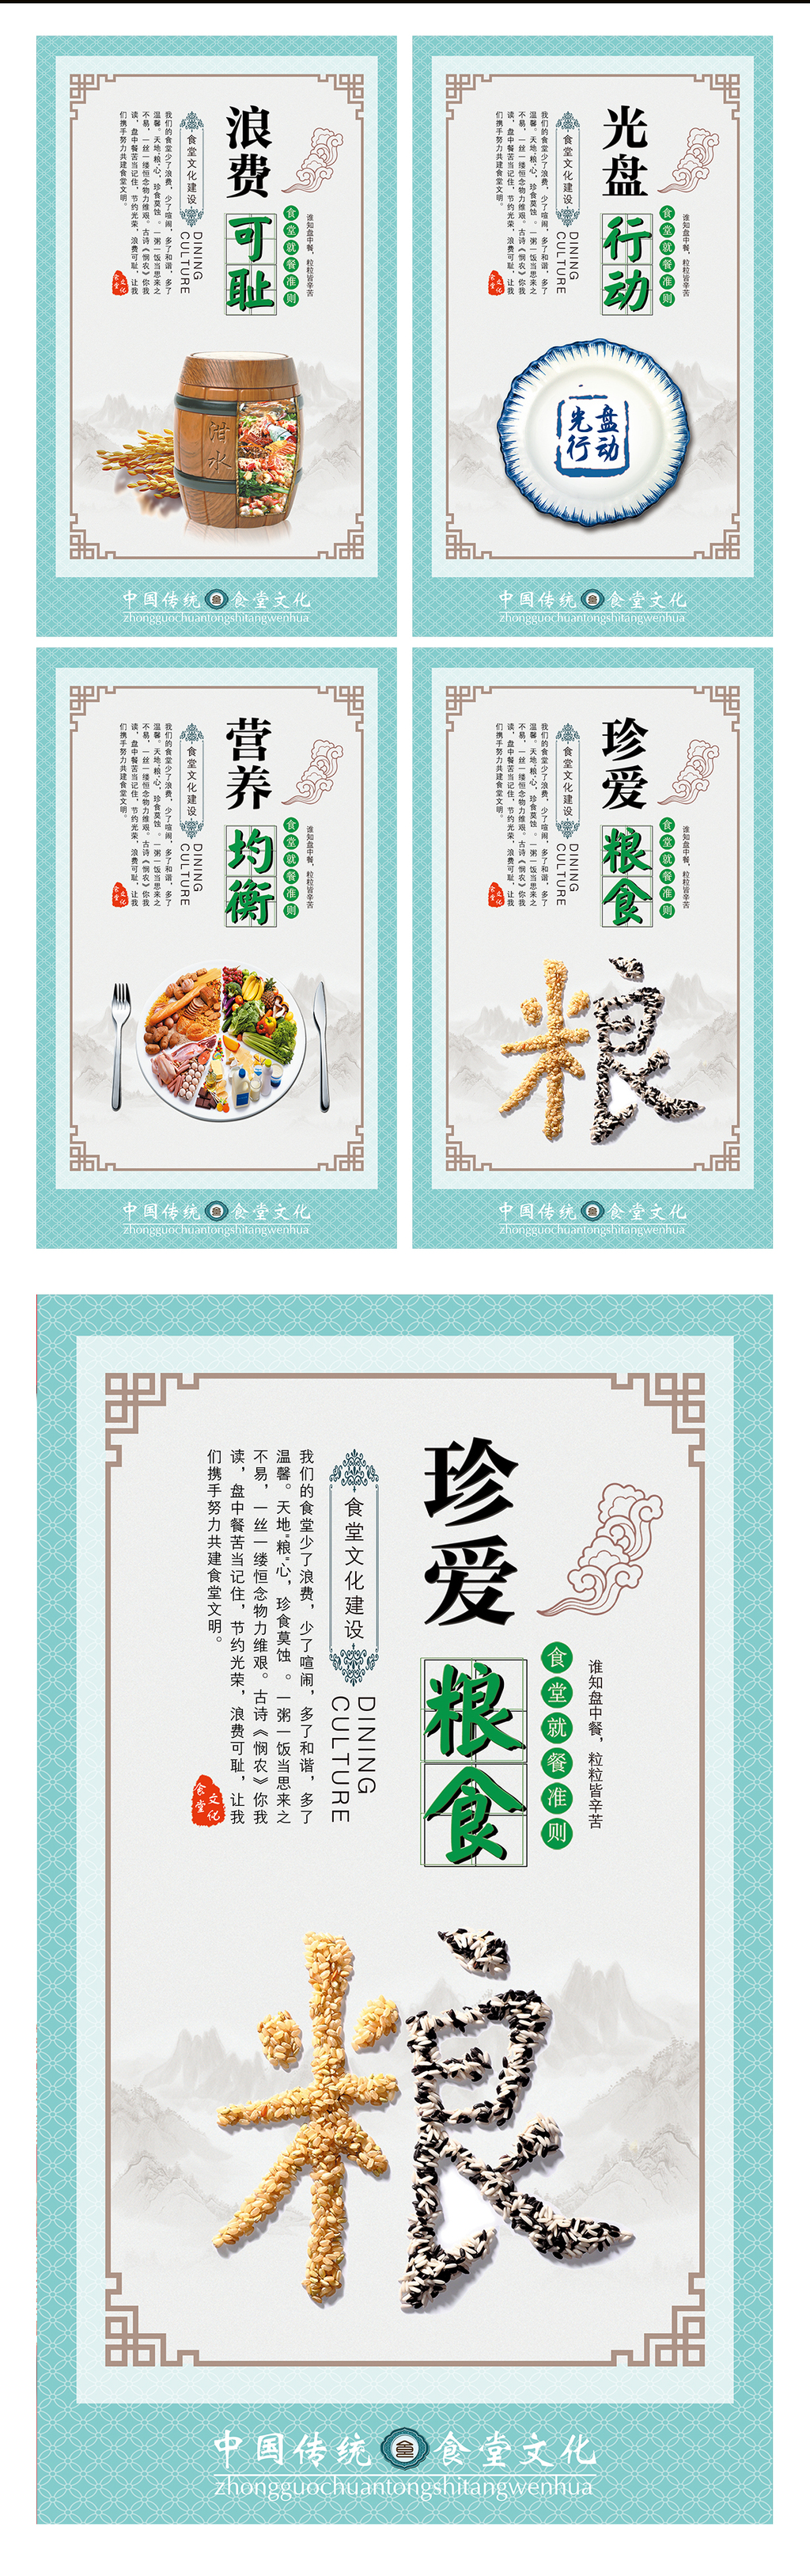 中国风光盘行动校园食堂文化展板挂画图片